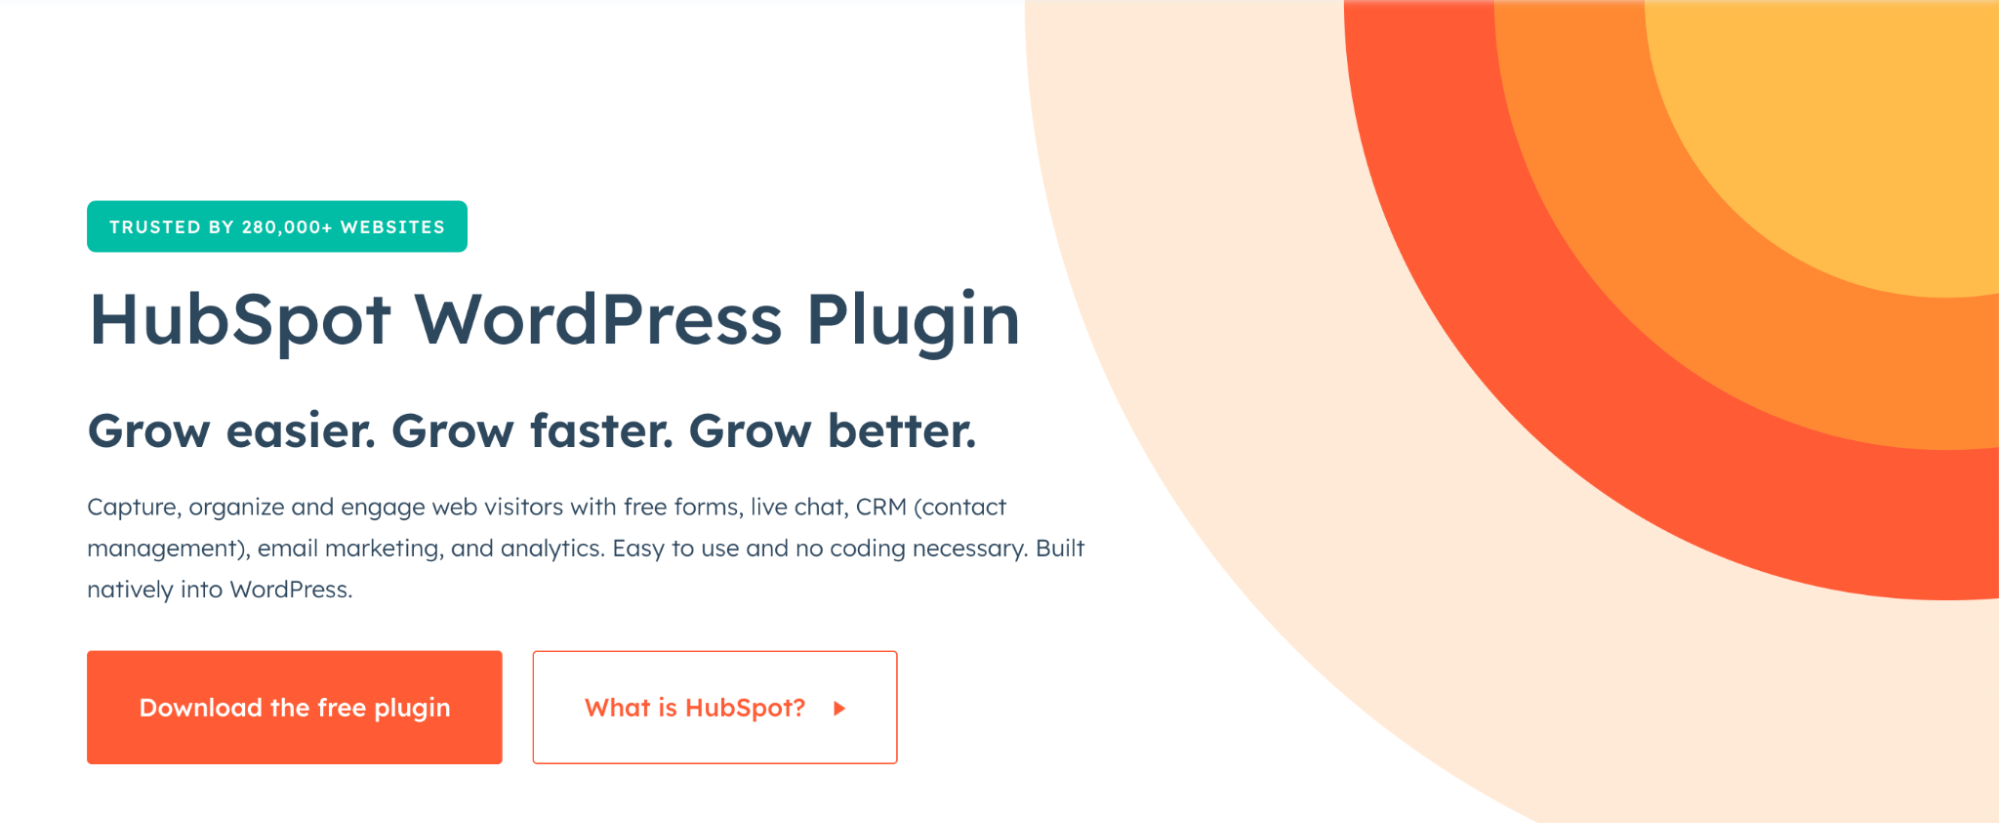 HubSpot WordPress Plugin